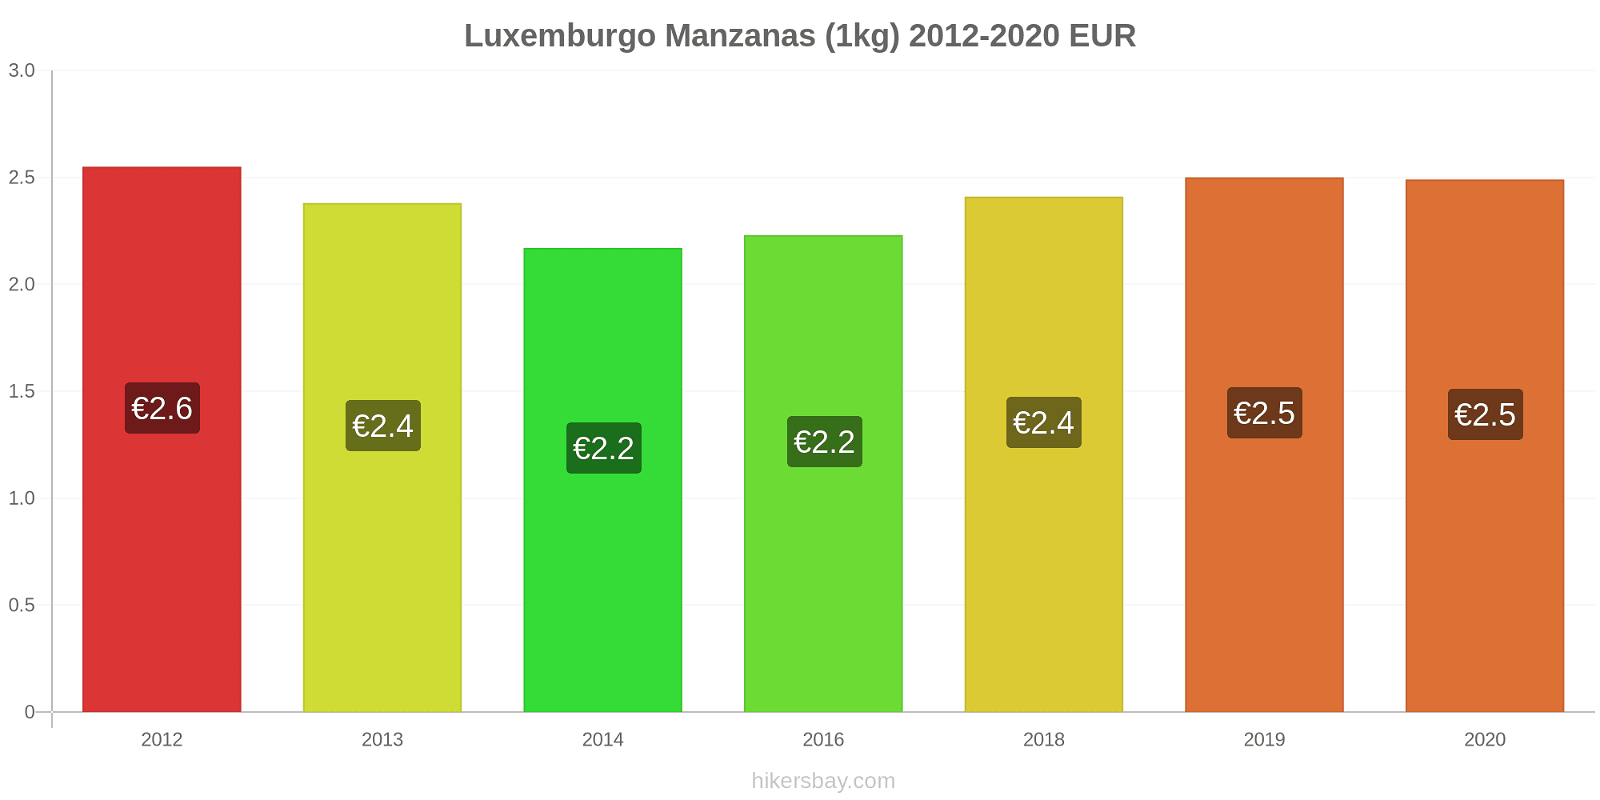 Luxemburgo cambios de precios Manzanas (1kg) hikersbay.com